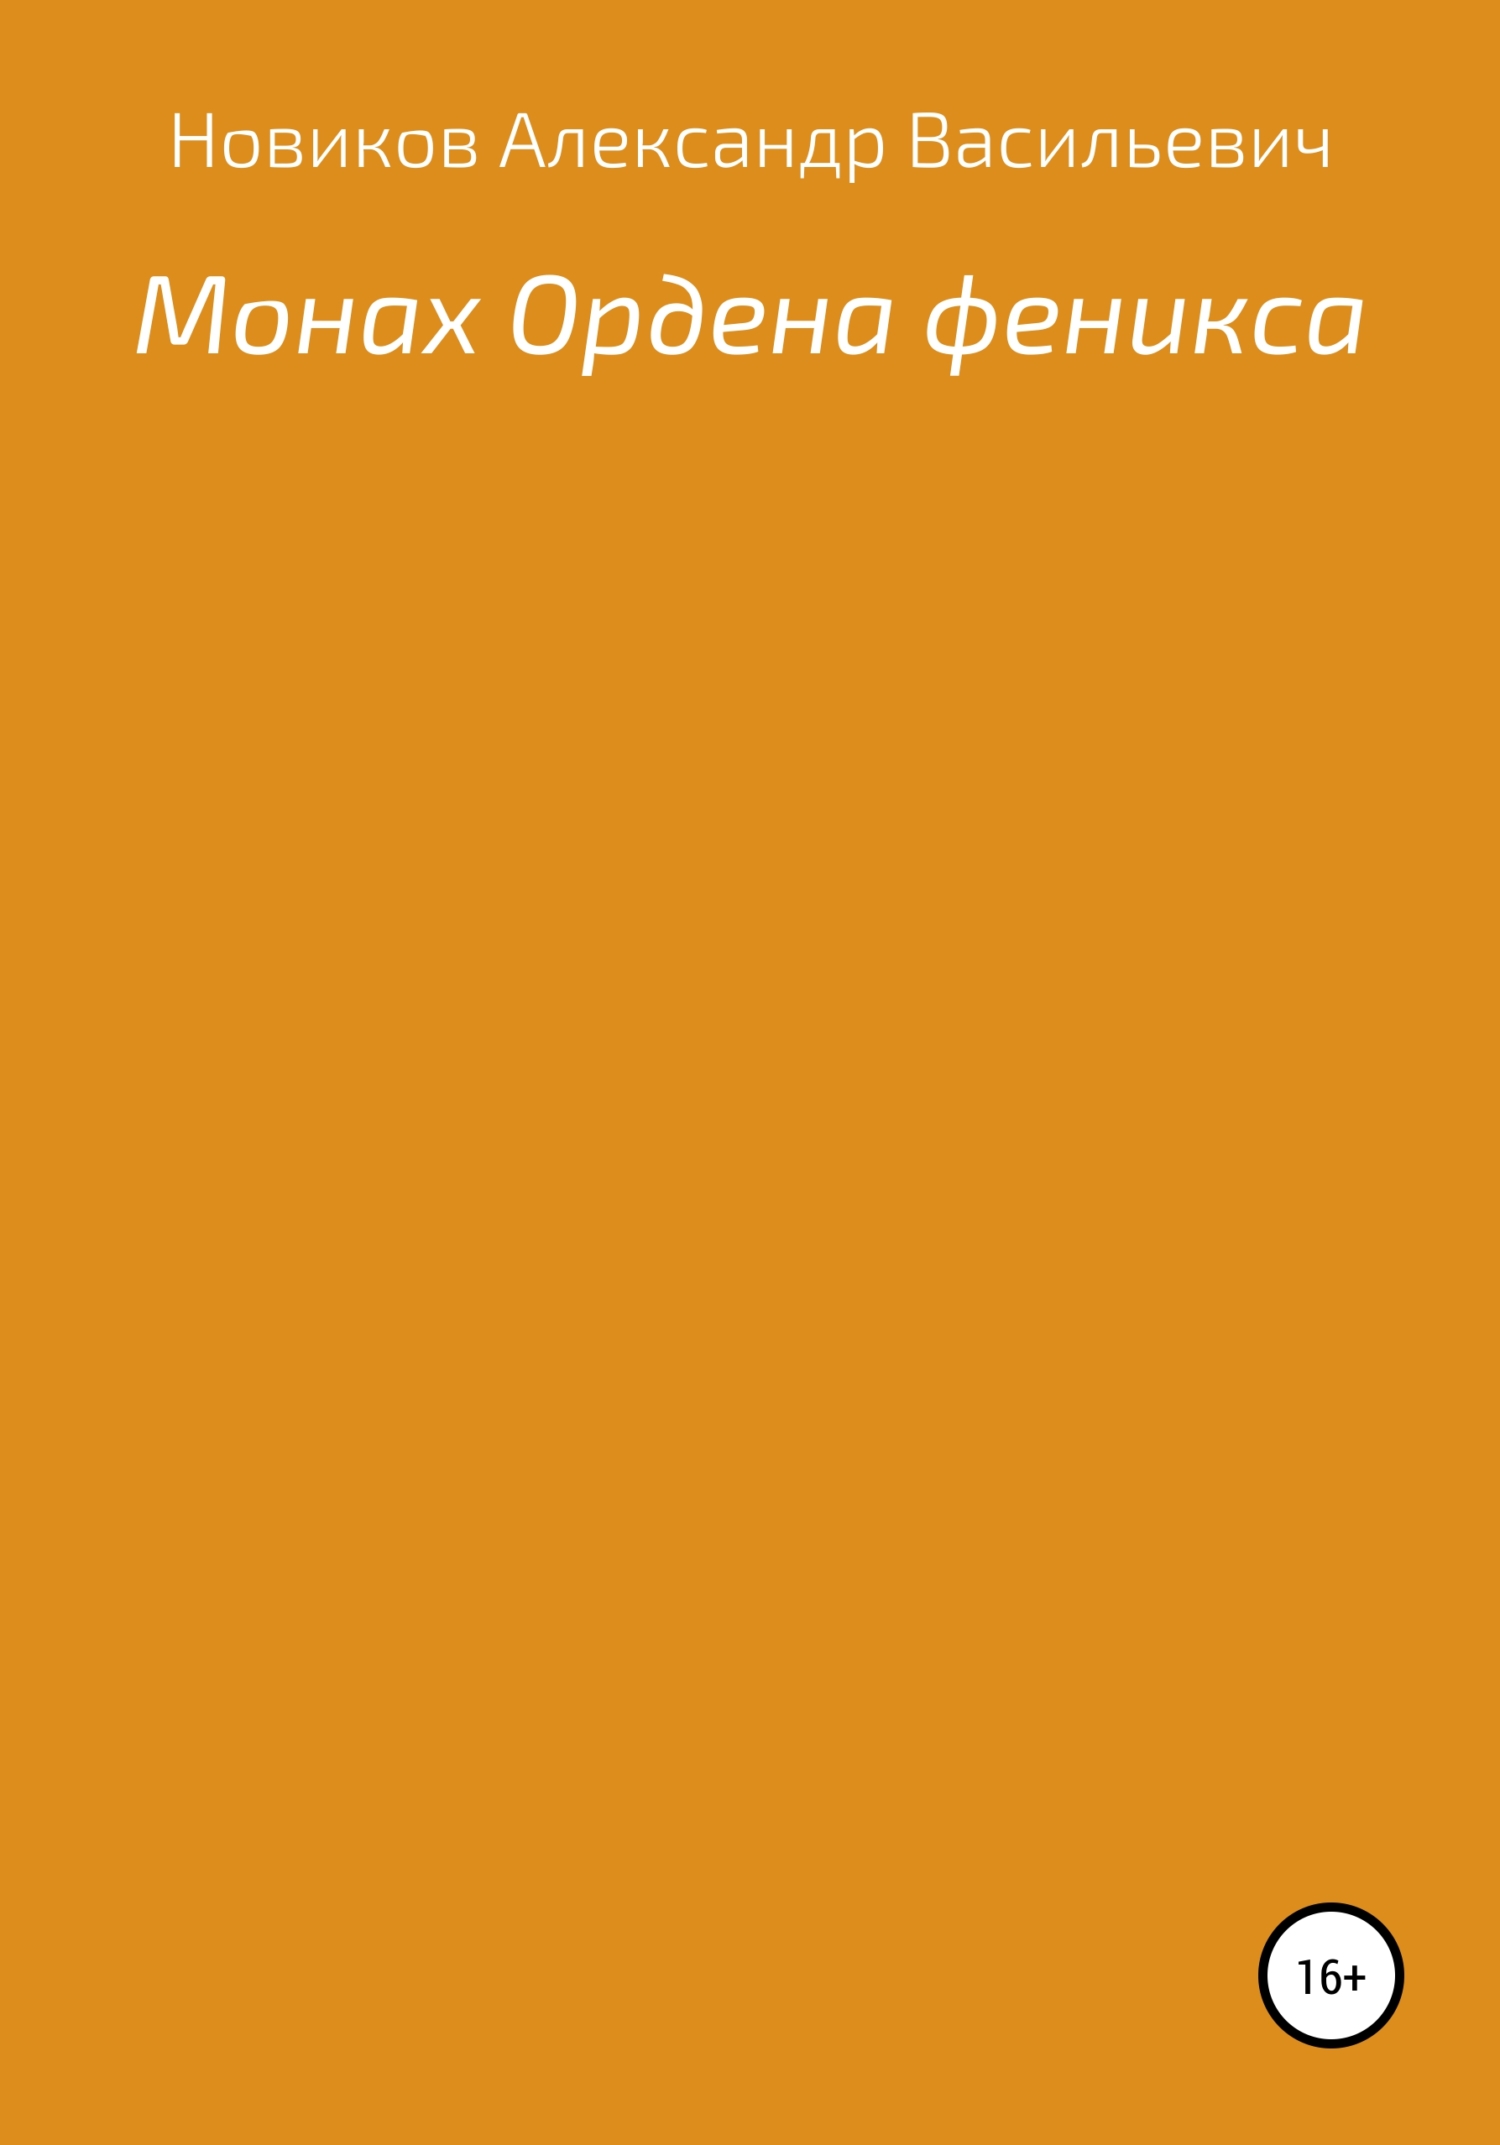 Монах Ордена феникса - Александр Васильевич Новиков